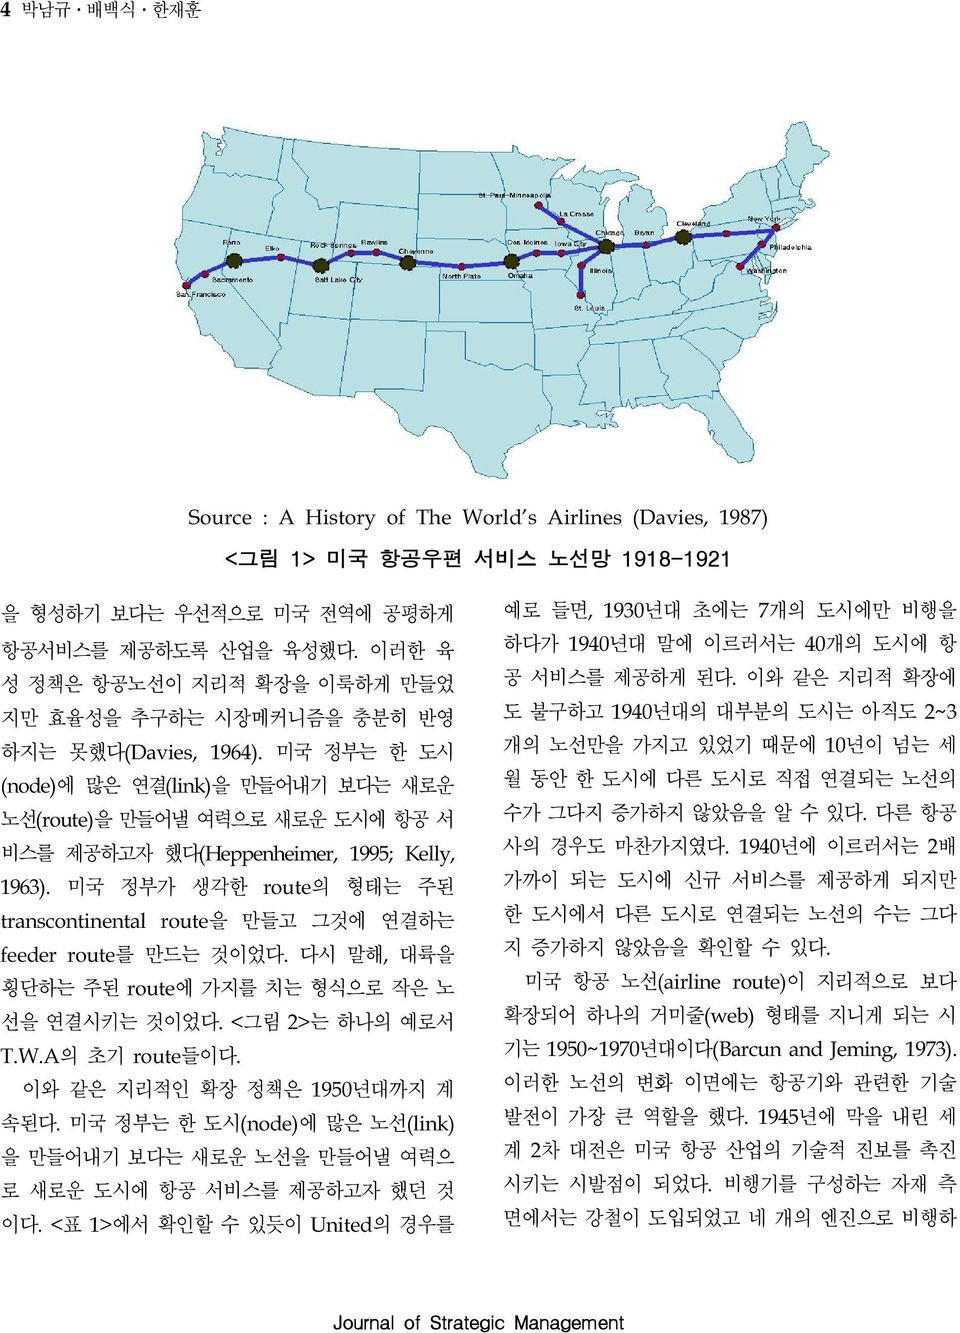 미국 정부는 한 도시 (node)에 많은 연결(link)을 만들어내기 보다는 새로운 노선(route)을 만들어낼 여력으로 새로운 도시에 항공 서 비스를 제공하고자 했다(Heppenheimer, 995; Kelly, 963).